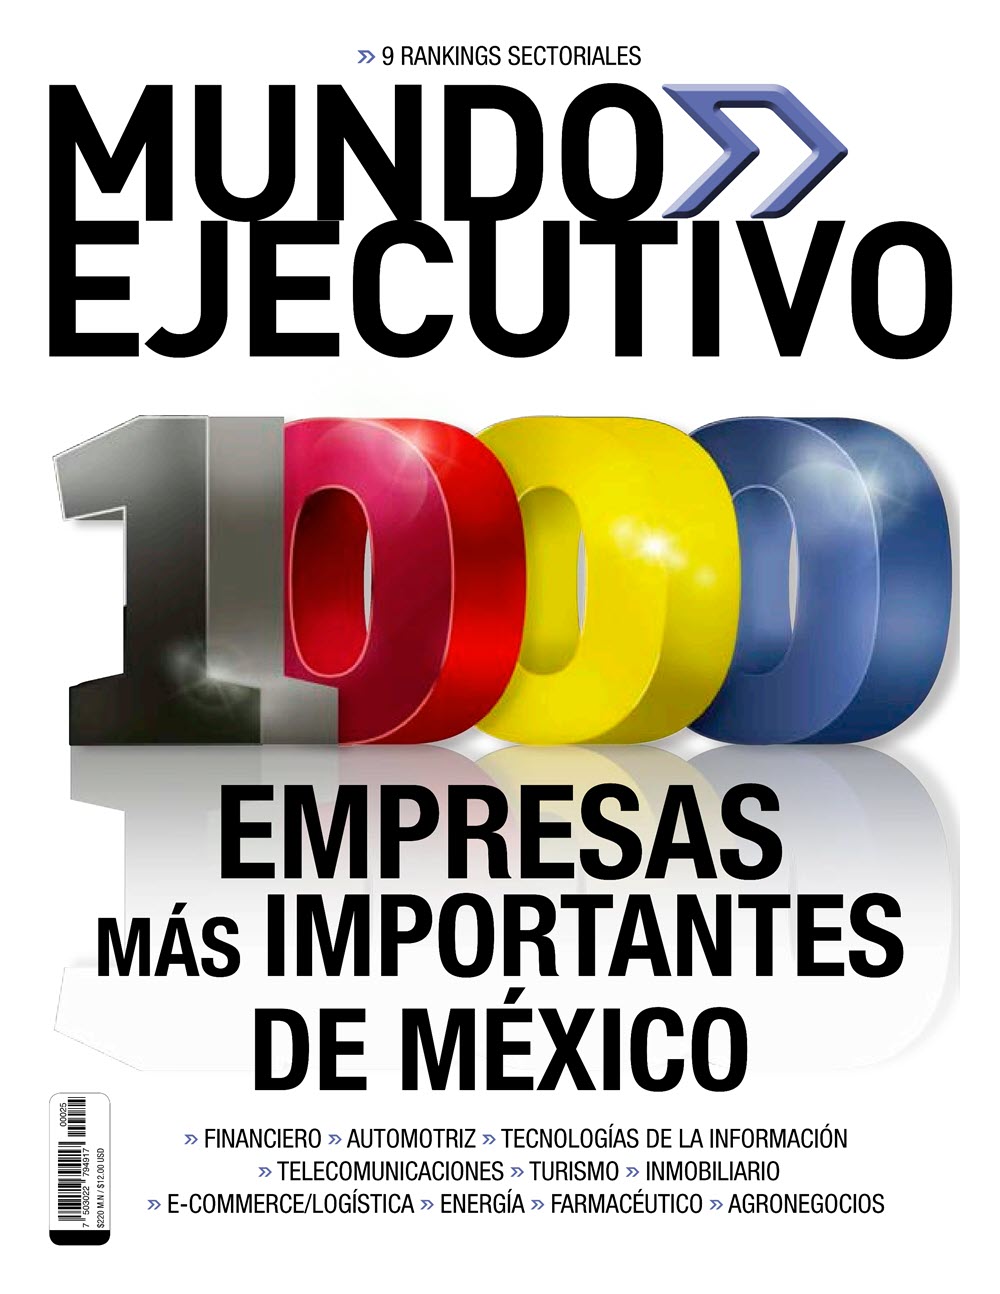 Las 1000 empresas más importantes de México